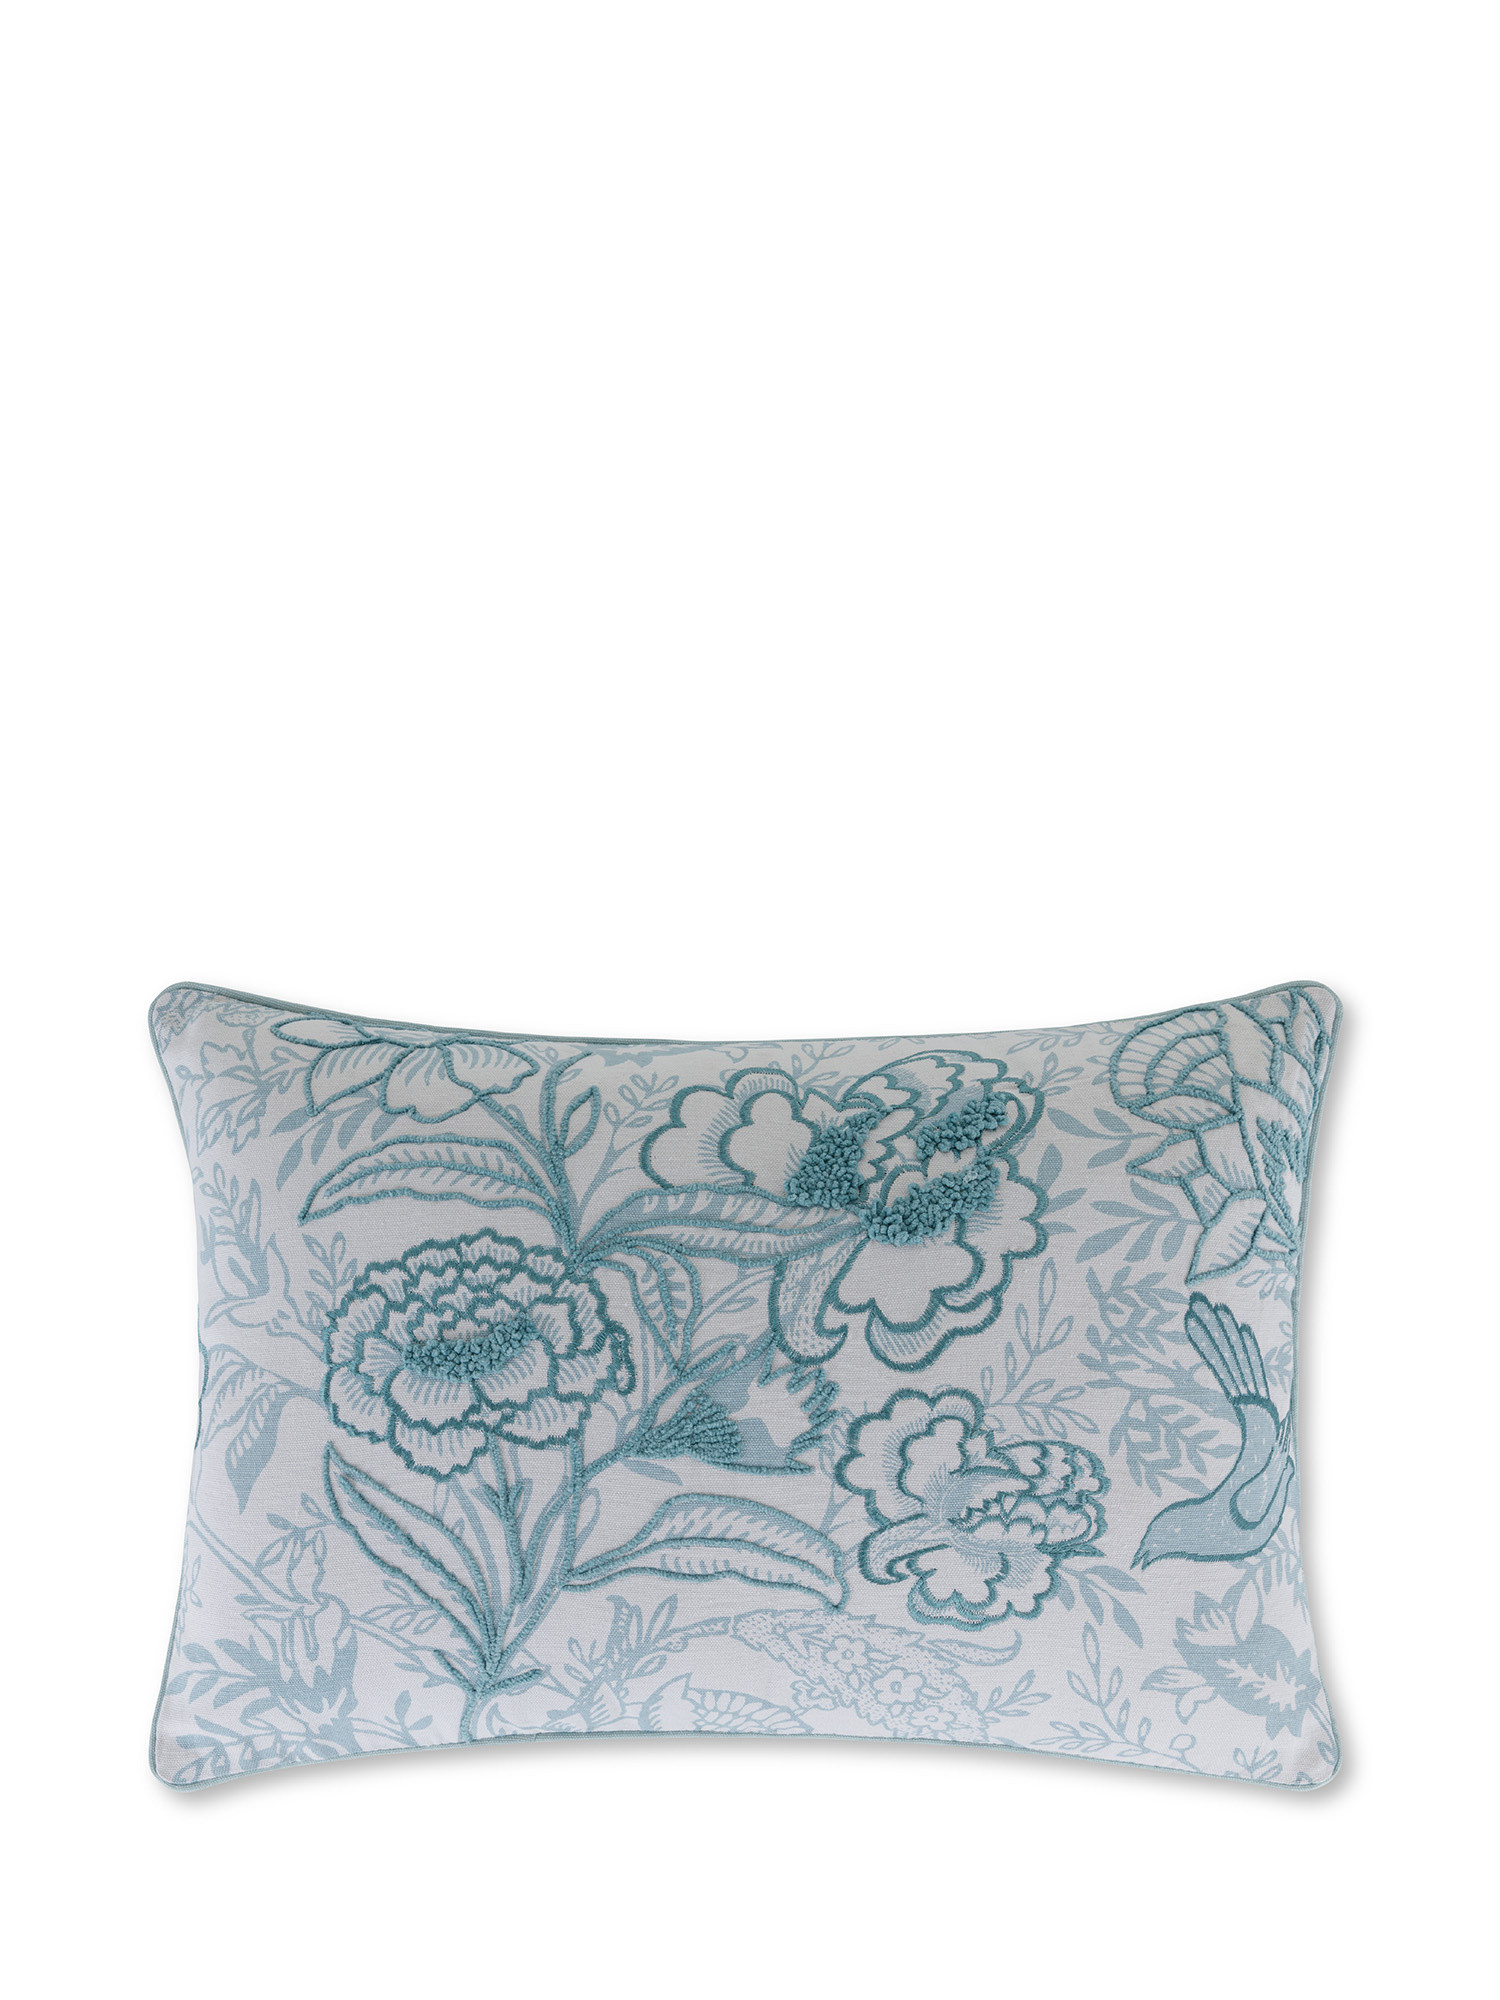 Cuscino con fiori ricamati in rilievo 35x50 cm, Azzurro, large image number 0